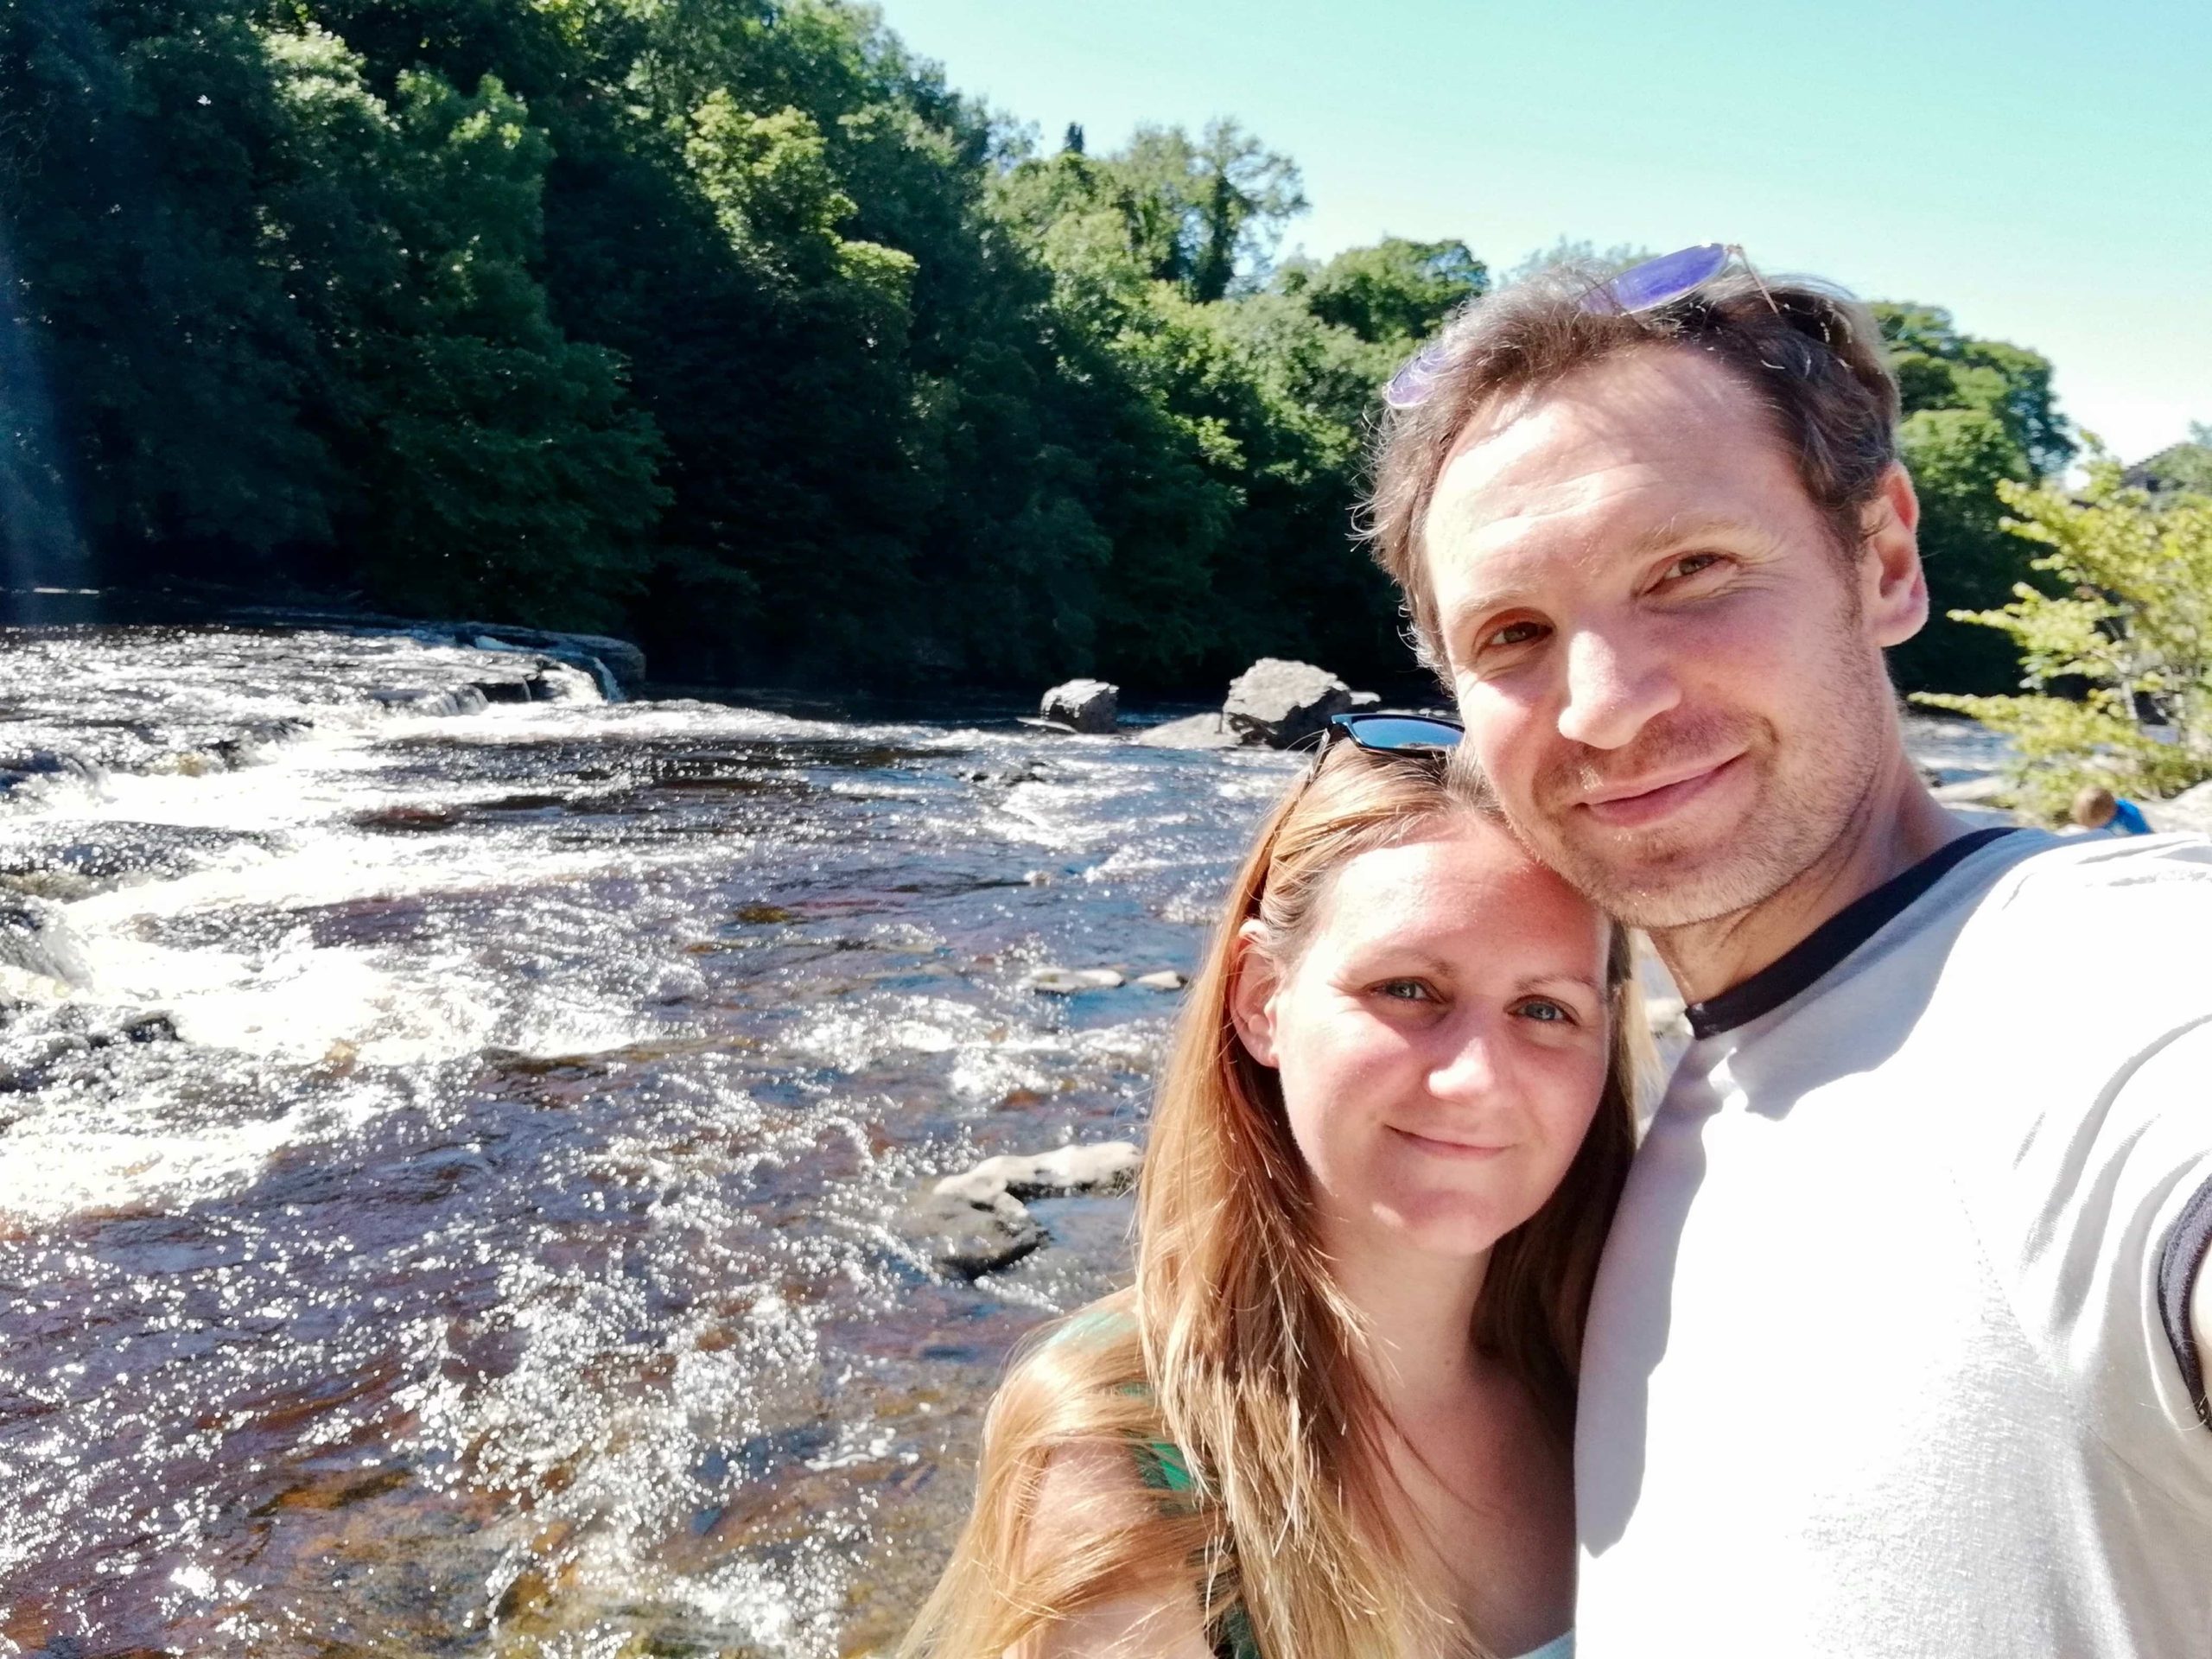 Us at Aysgarth Falls, Yorkshire